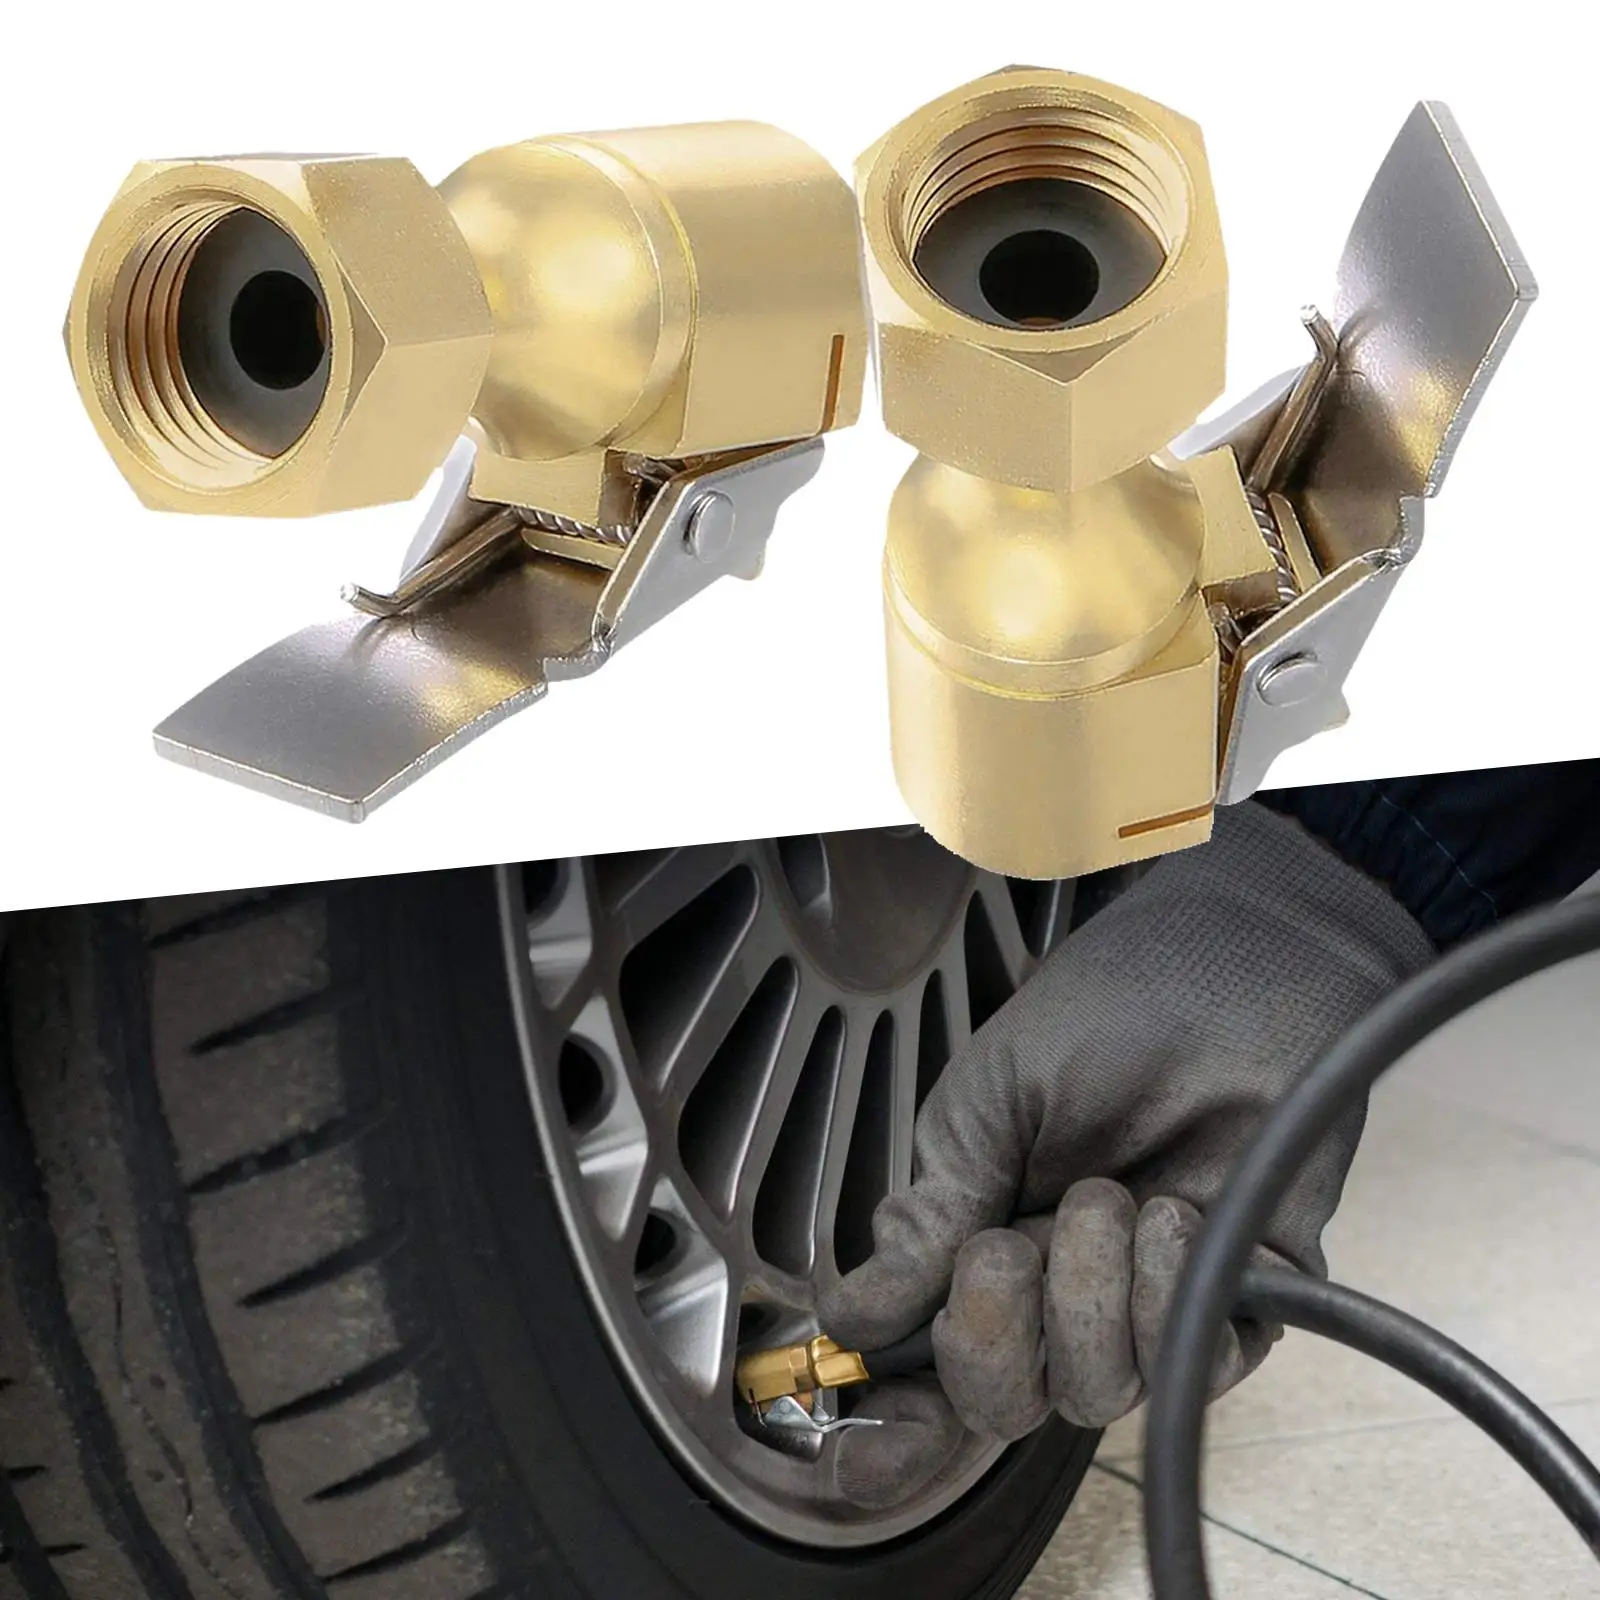 2x Car Lock tire Air Chuck with Clip, Air Pump Thread Nozzle